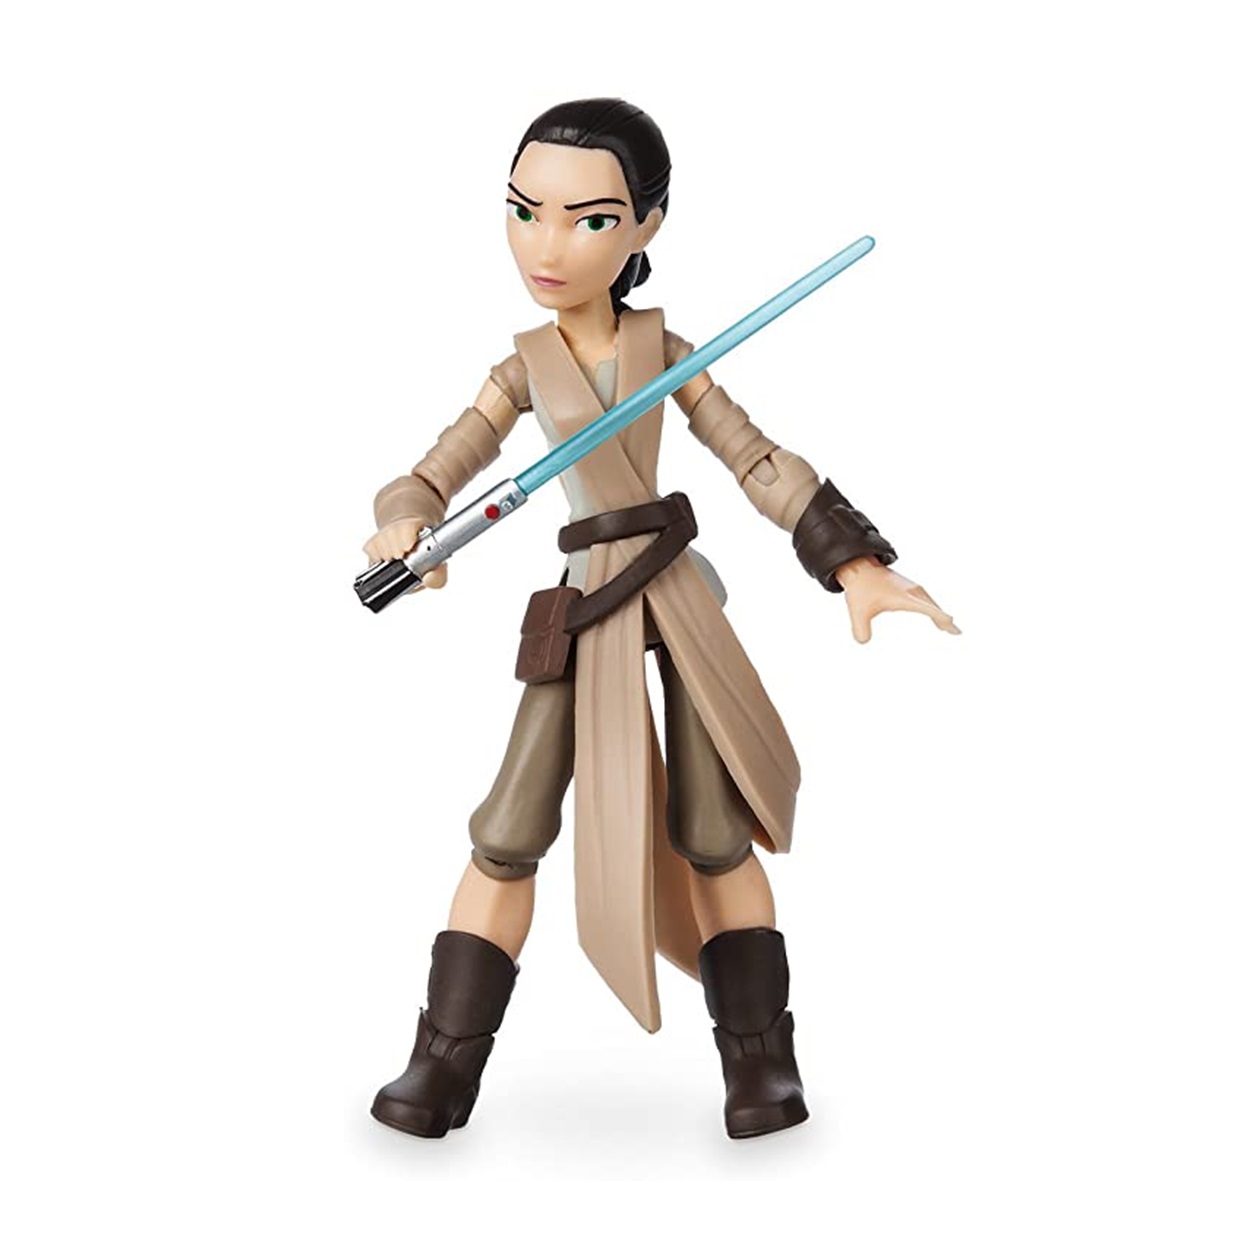 Rey #14 Figura Star Wars The Force Awakens Disney Toybox 